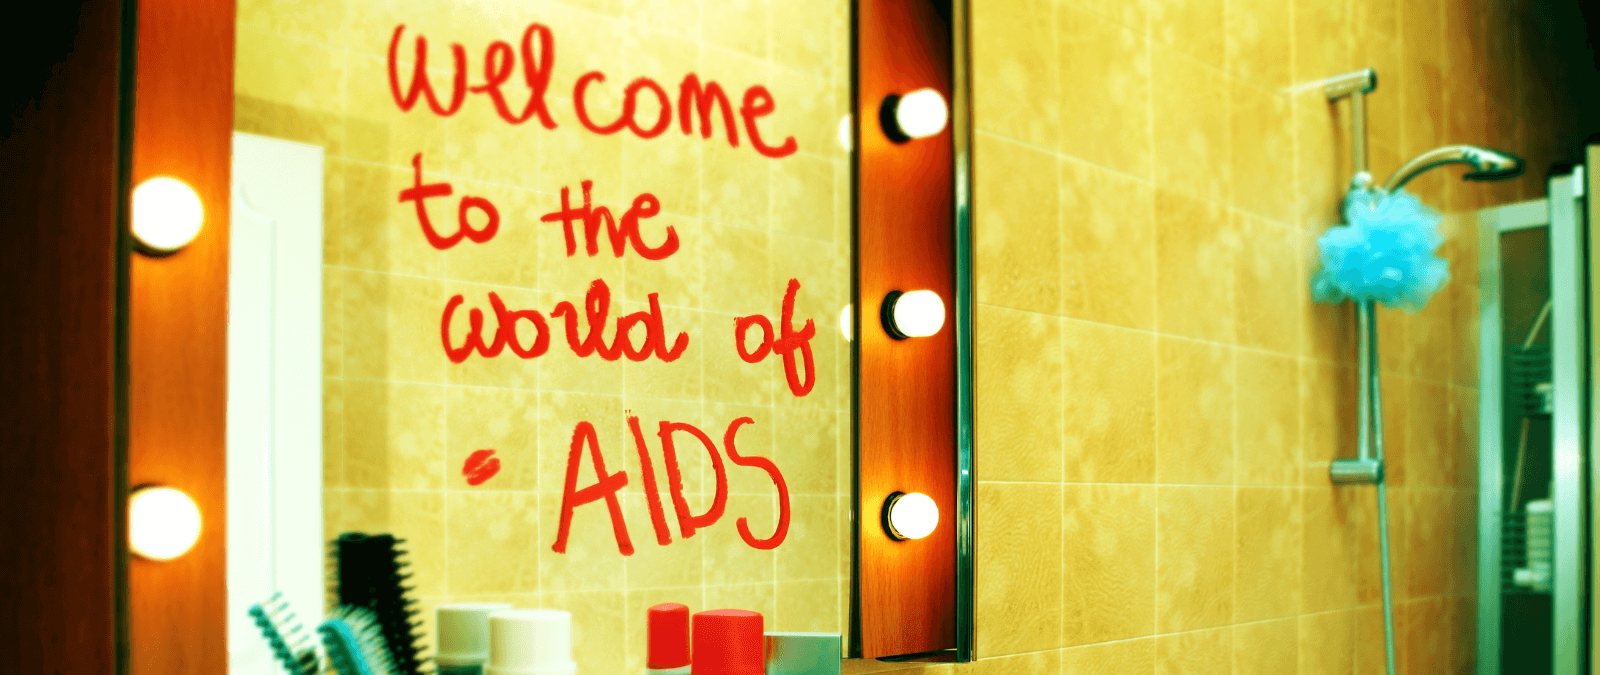 Arriba 43+ imagen bienvenido al club del sida